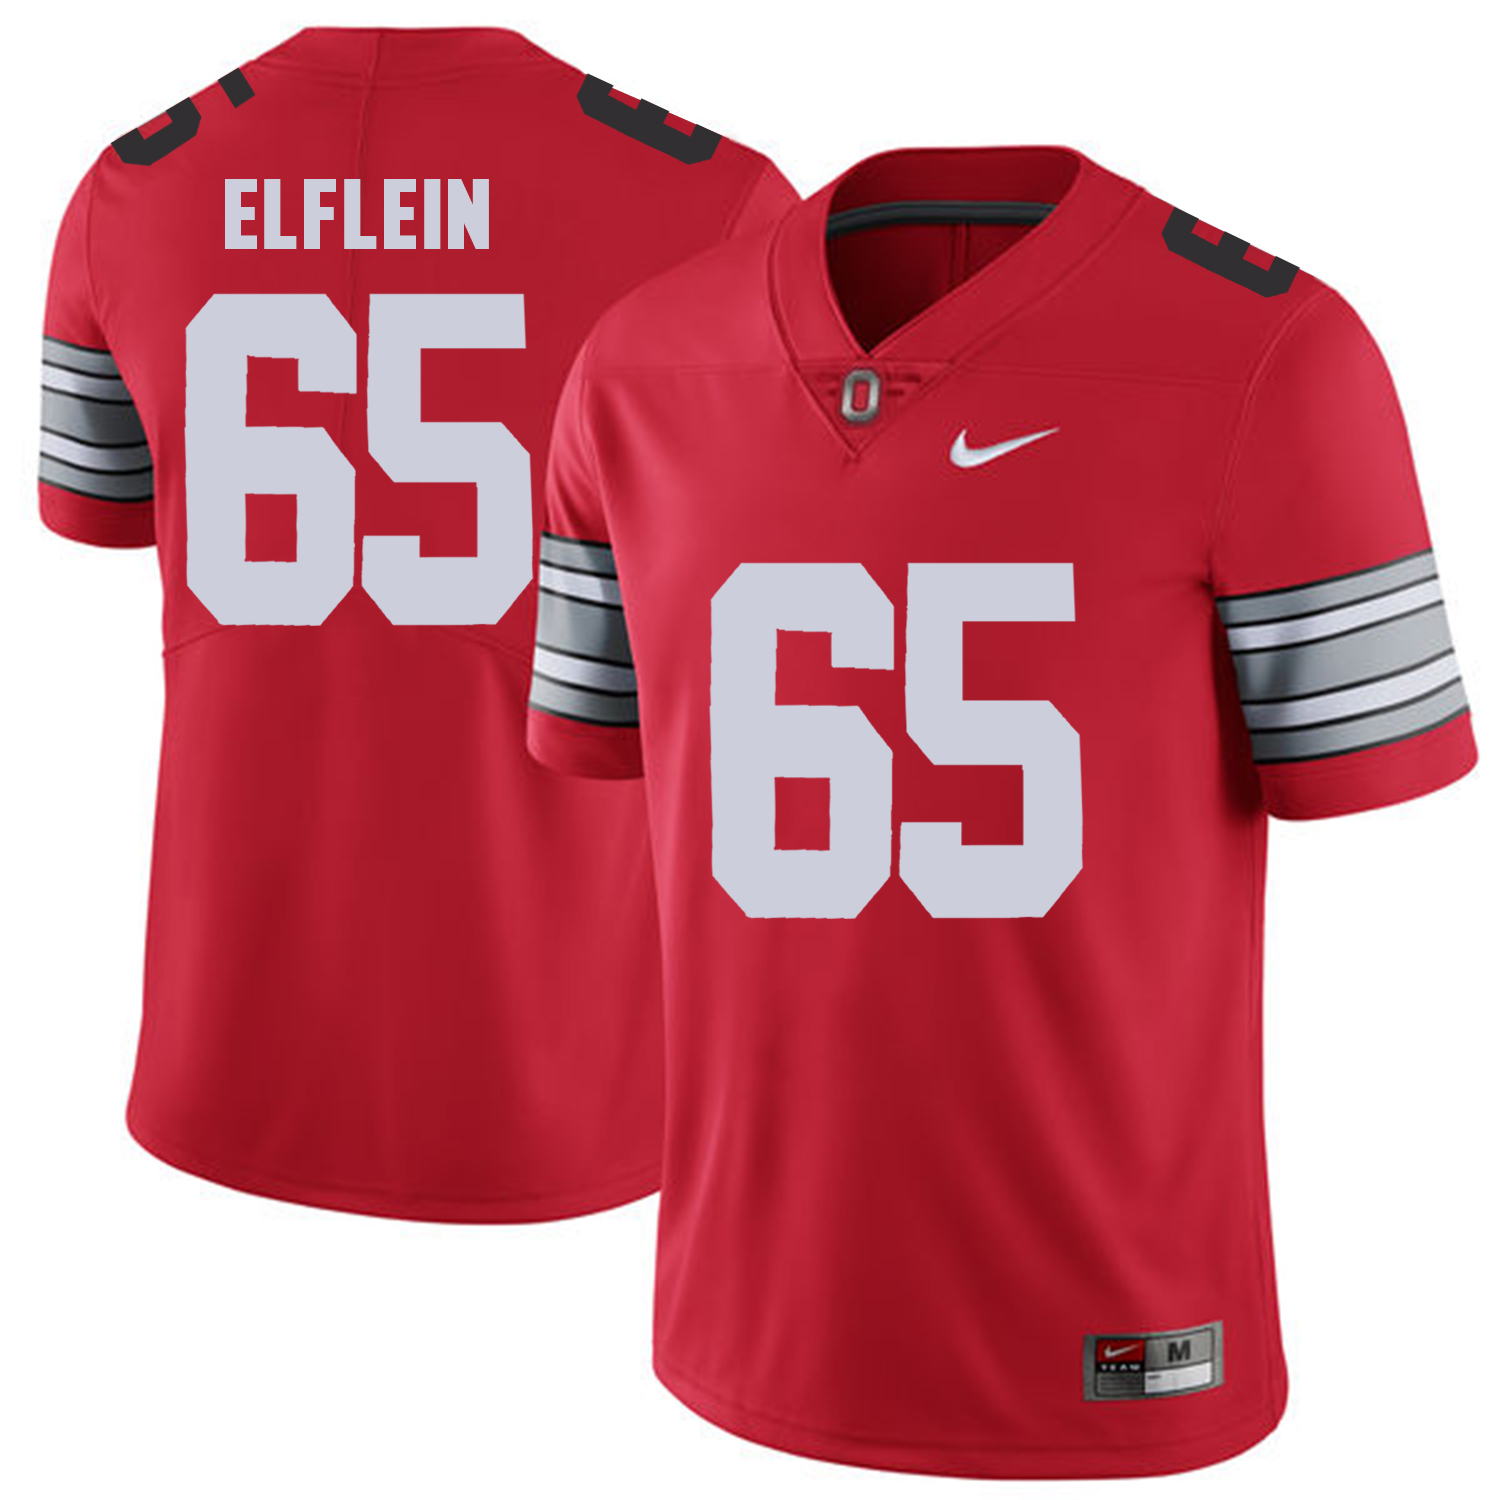 Men Ohio State 65 Elflein Red Customized NCAA Jerseys